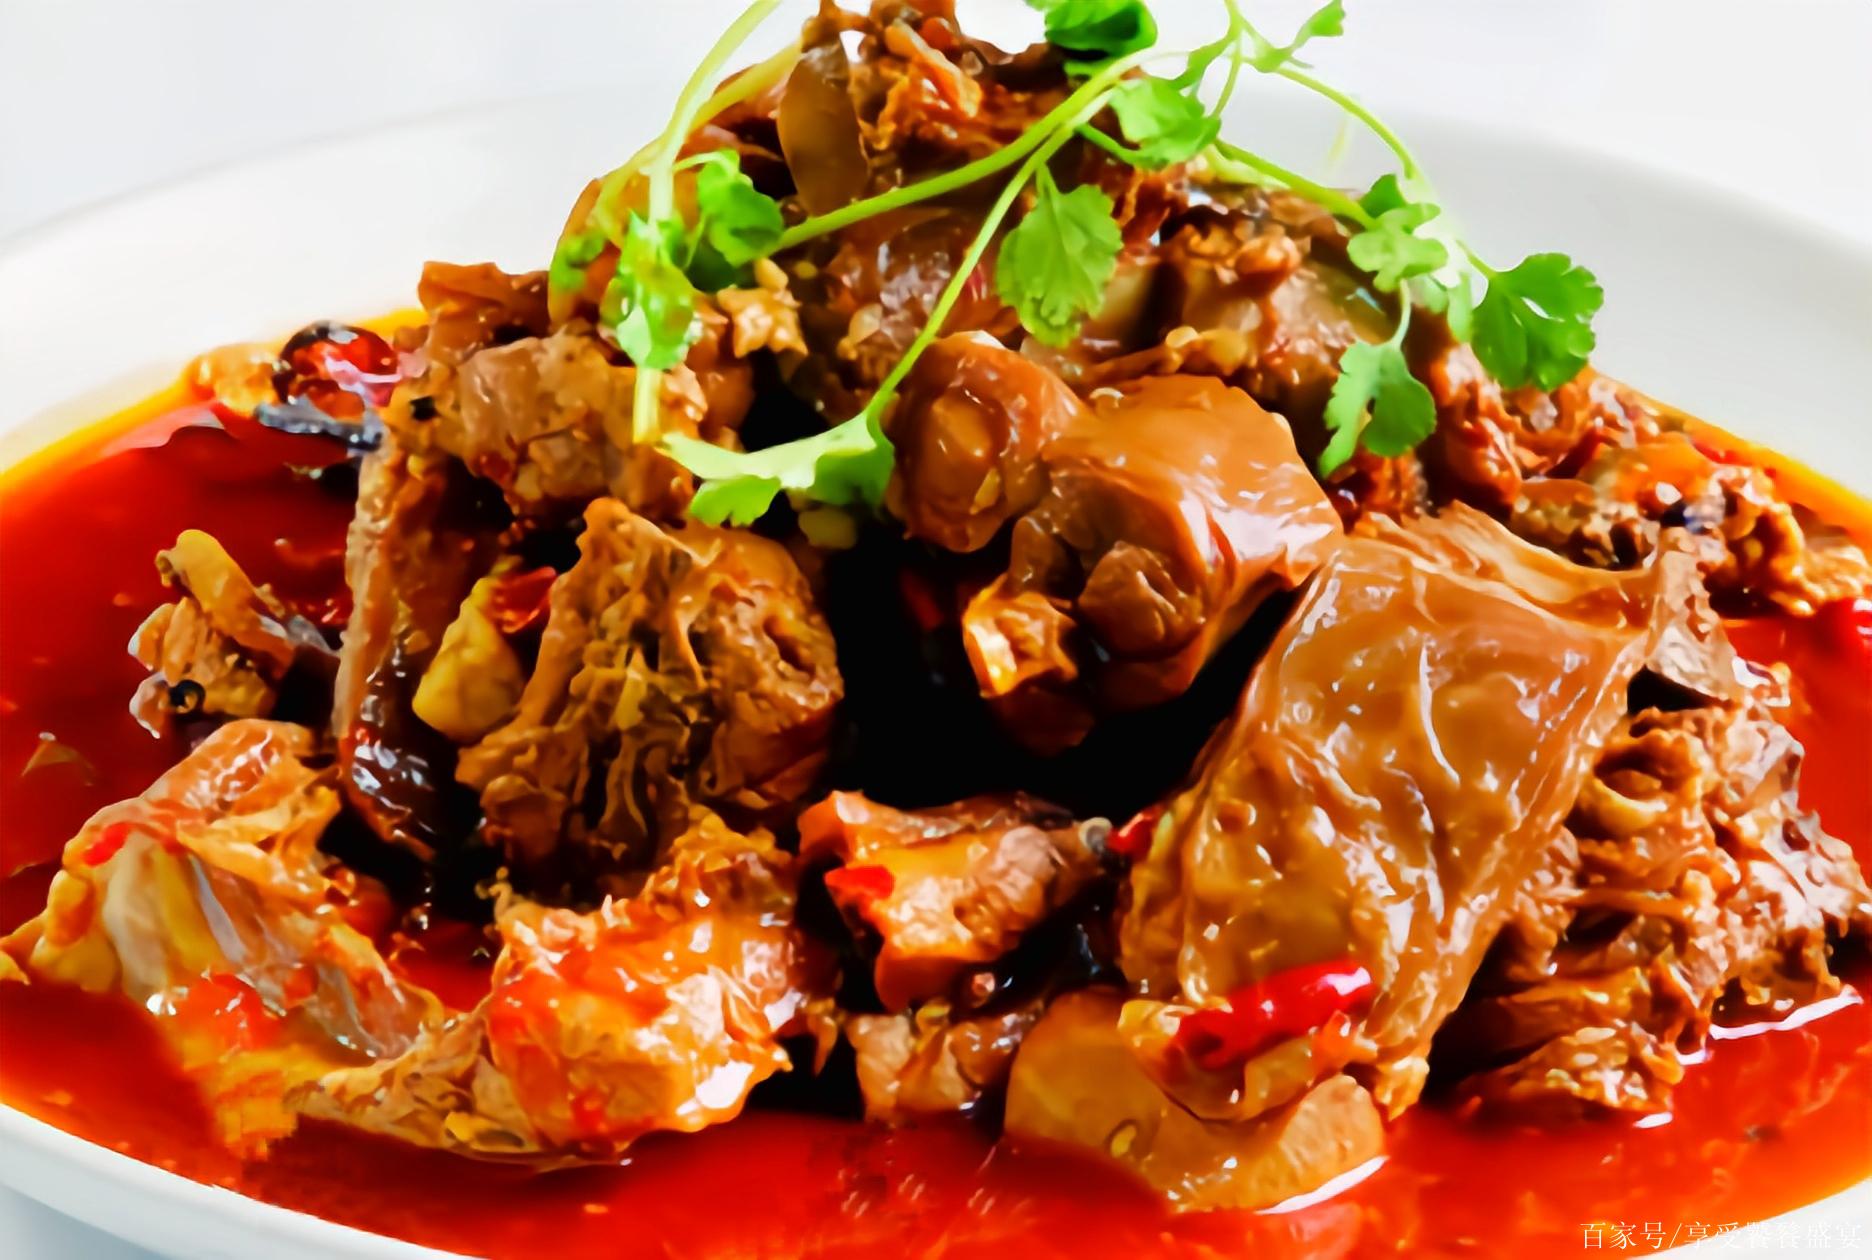 중국 요리법을 통한 중국어 : 拌[bàn]버무리다,炖[ dùn ]고다,灼[ zhuó ]데치다 : 네이버 블로그